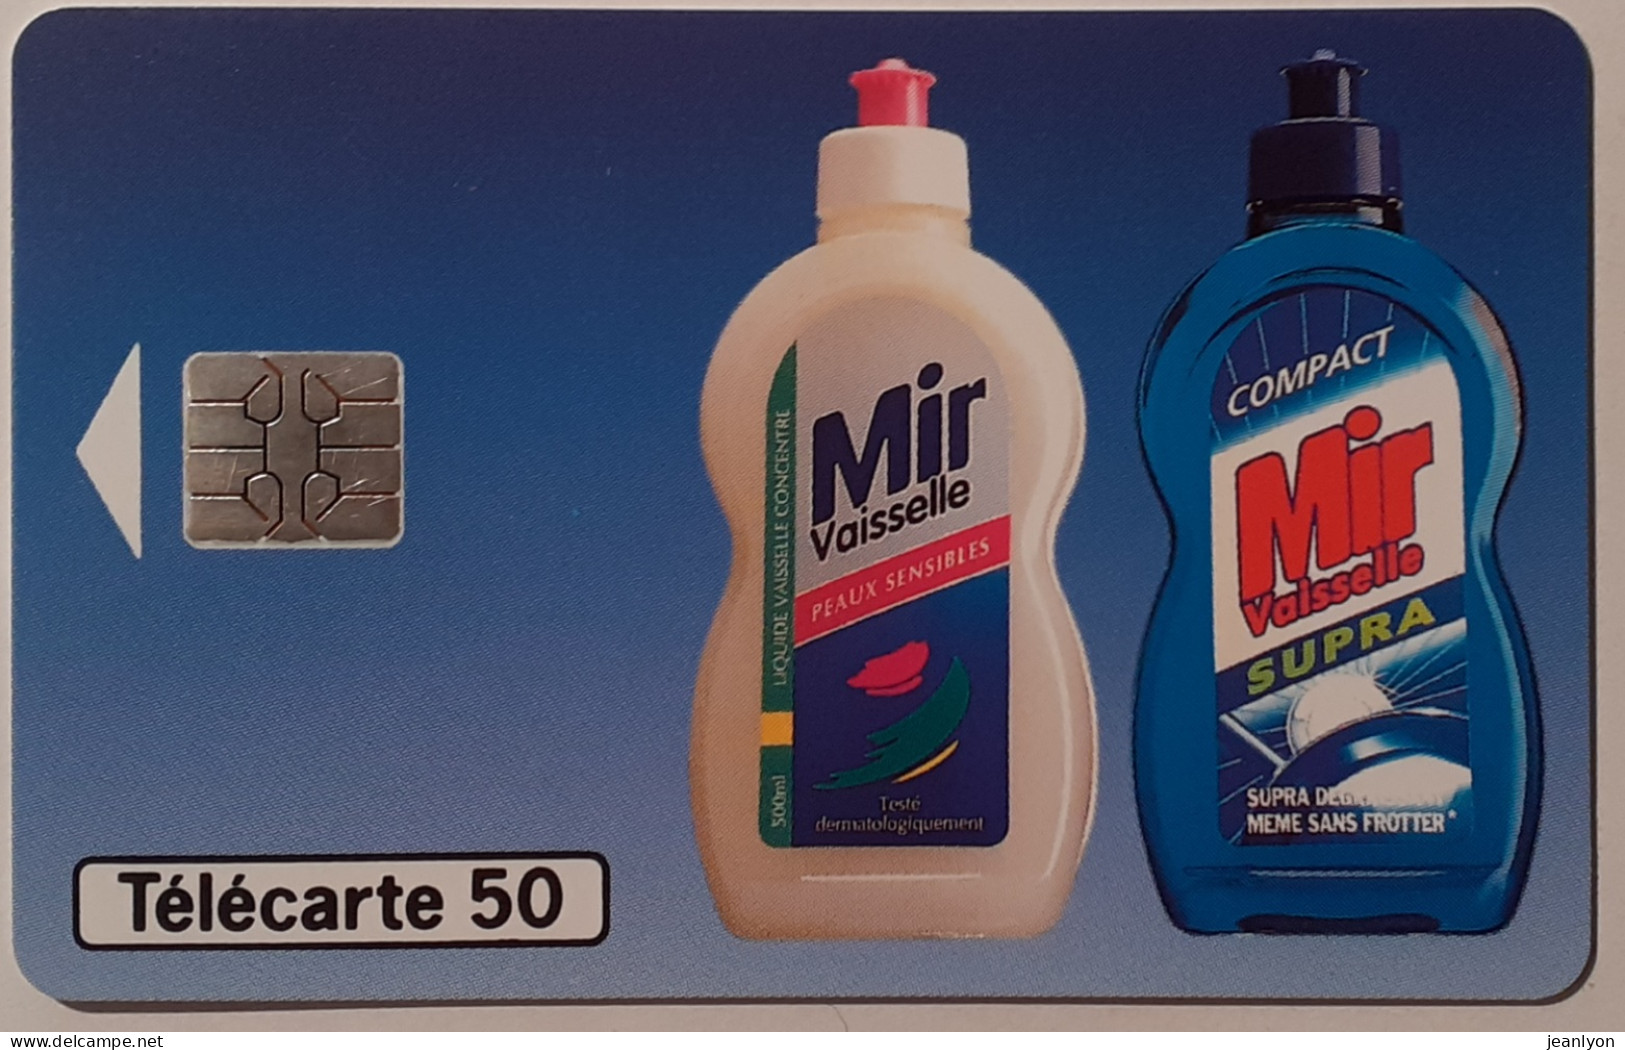 MIR VAISSELLE - Bidon Liquide Vaisselle - Télécarte 50 Unités Utilisée / Tirage 8000 Exemplaires - 50 Units